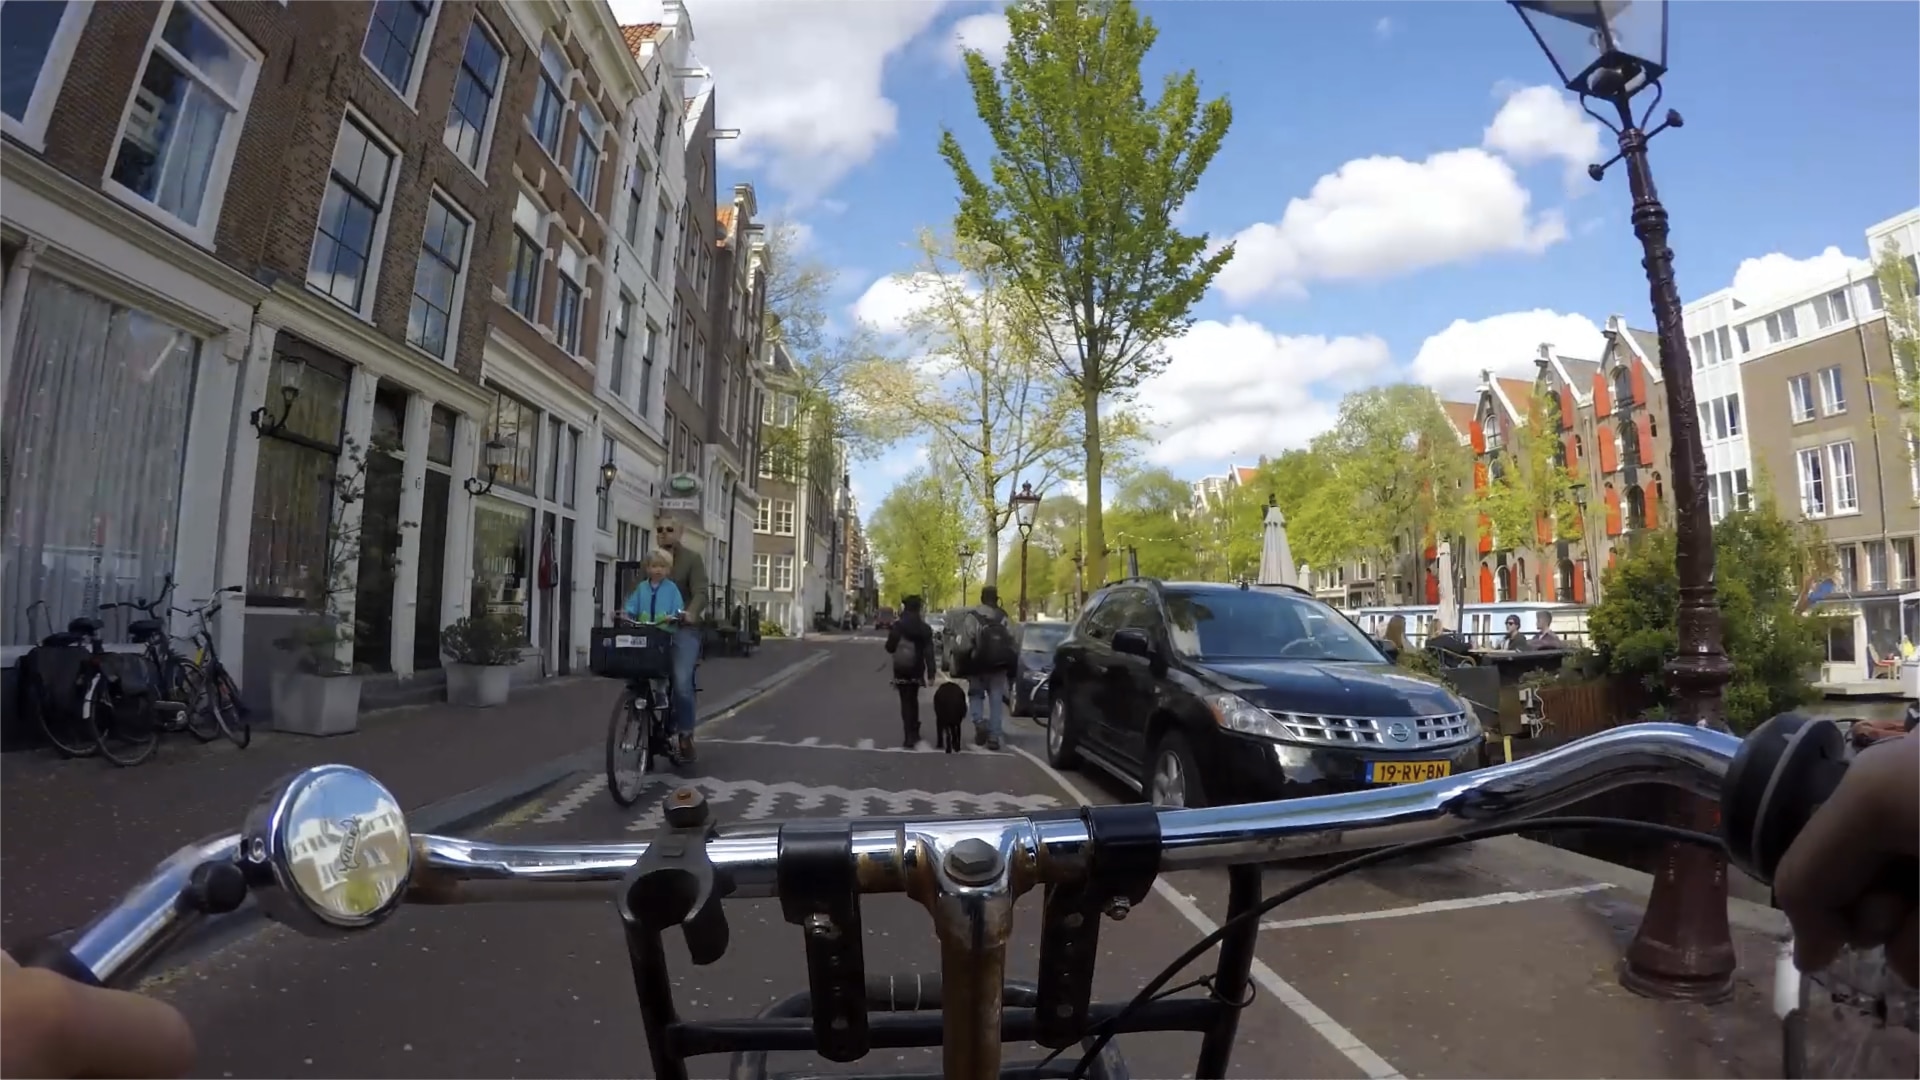 riding a bike through Amsterdam